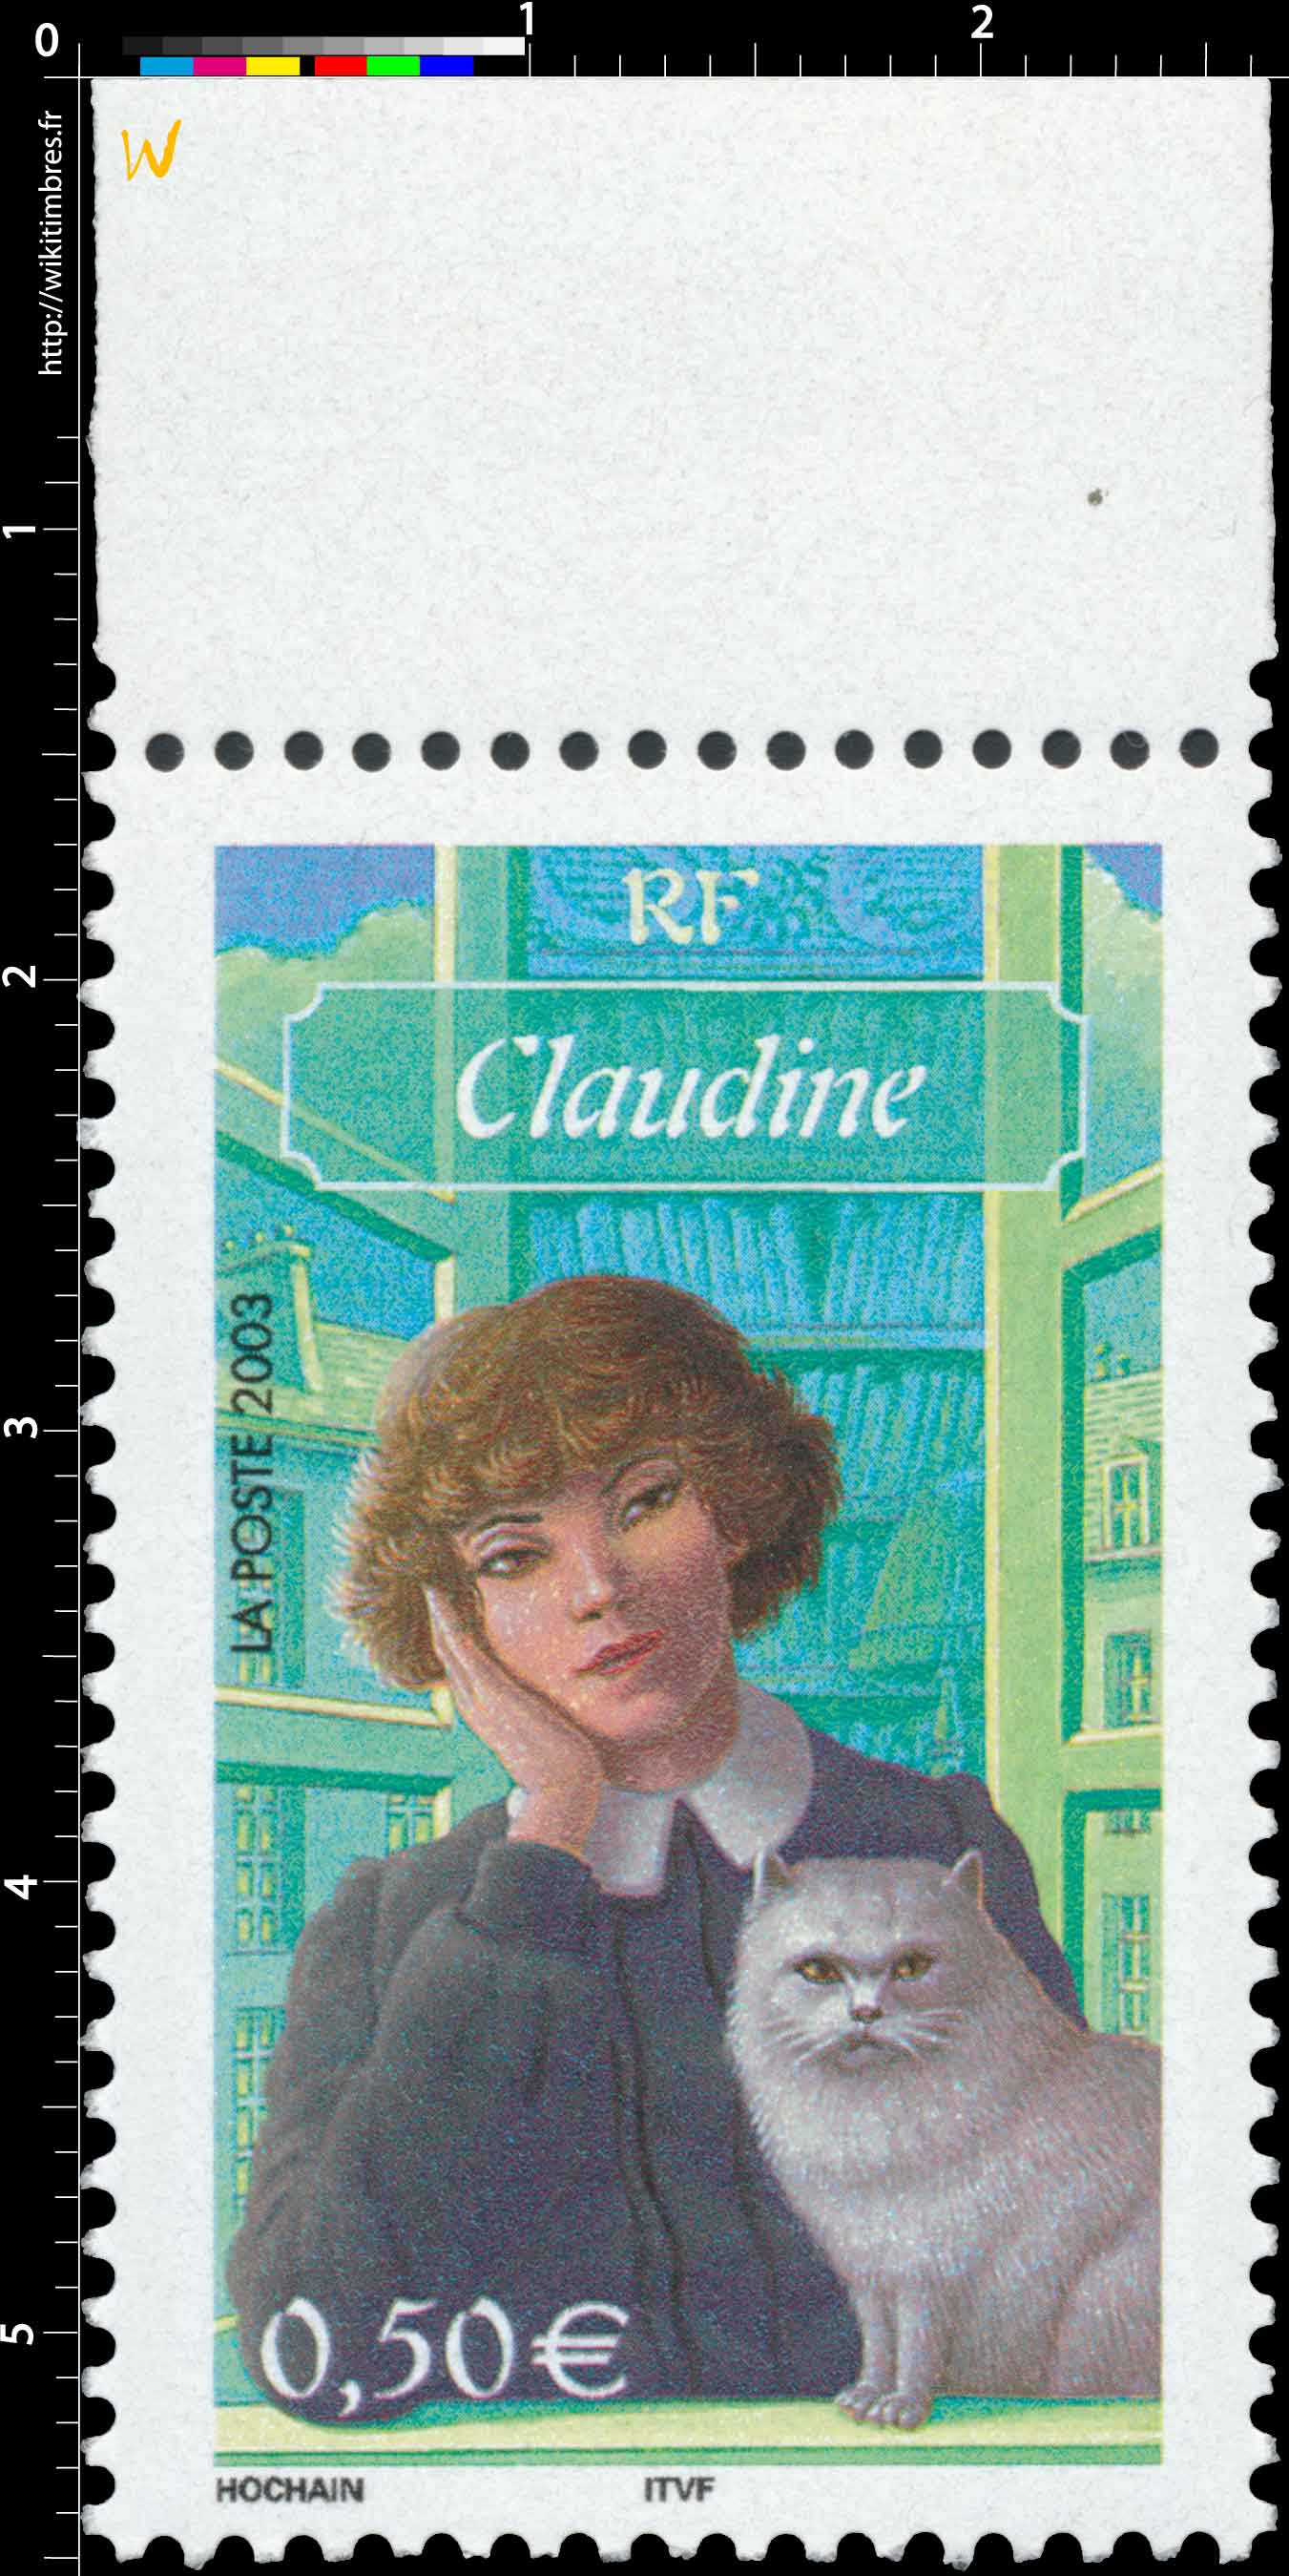 2003 Claudine